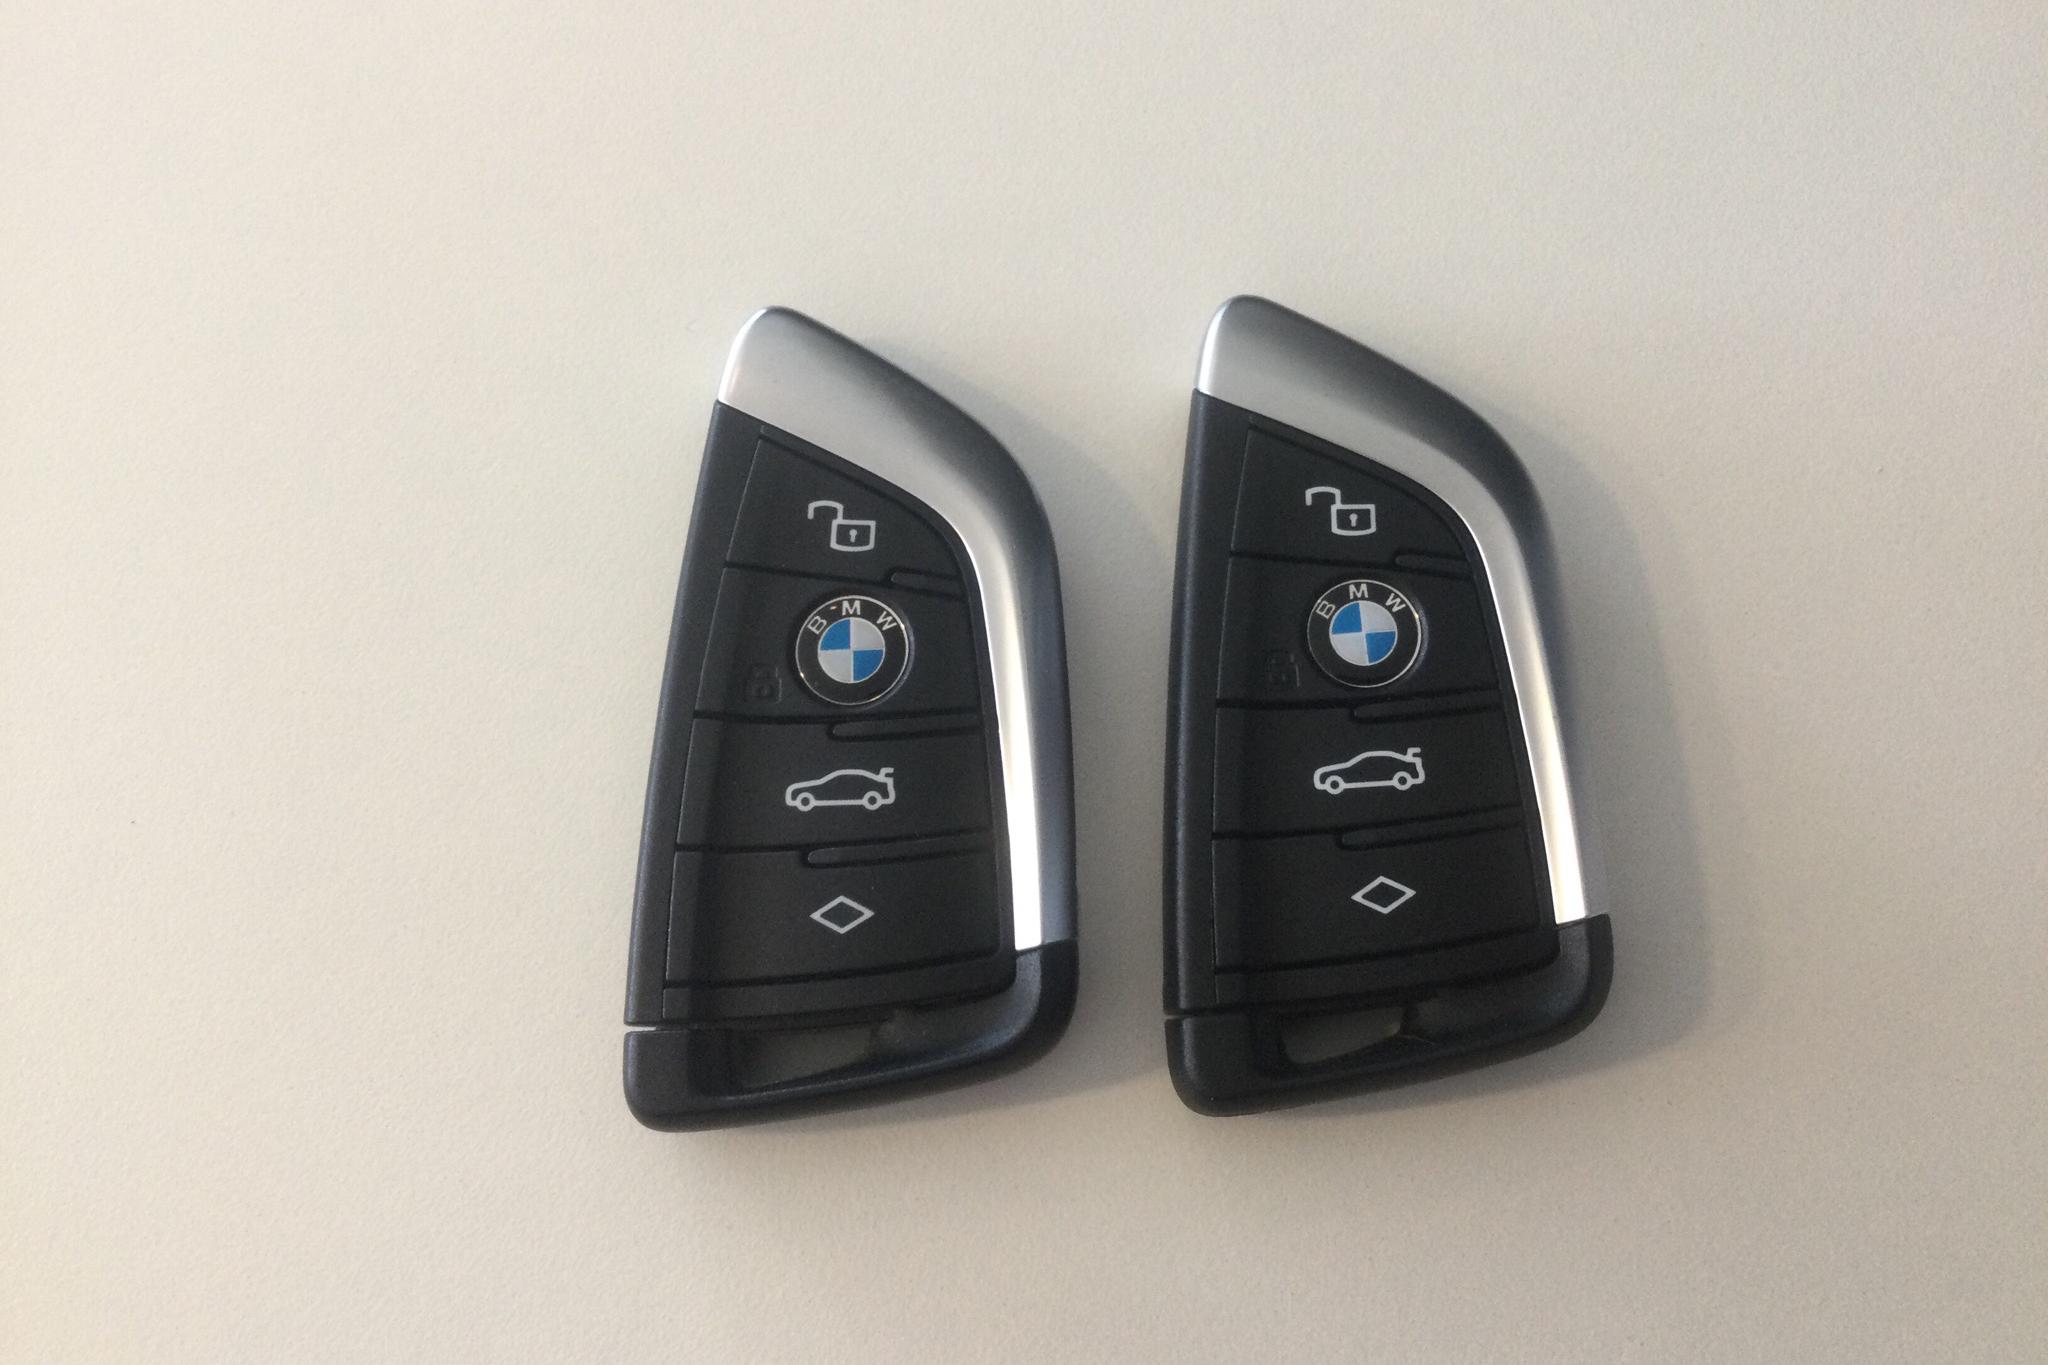 BMW 330e xDrive Touring, G21 (292hk) - 901 mil - Automat - grå - 2022